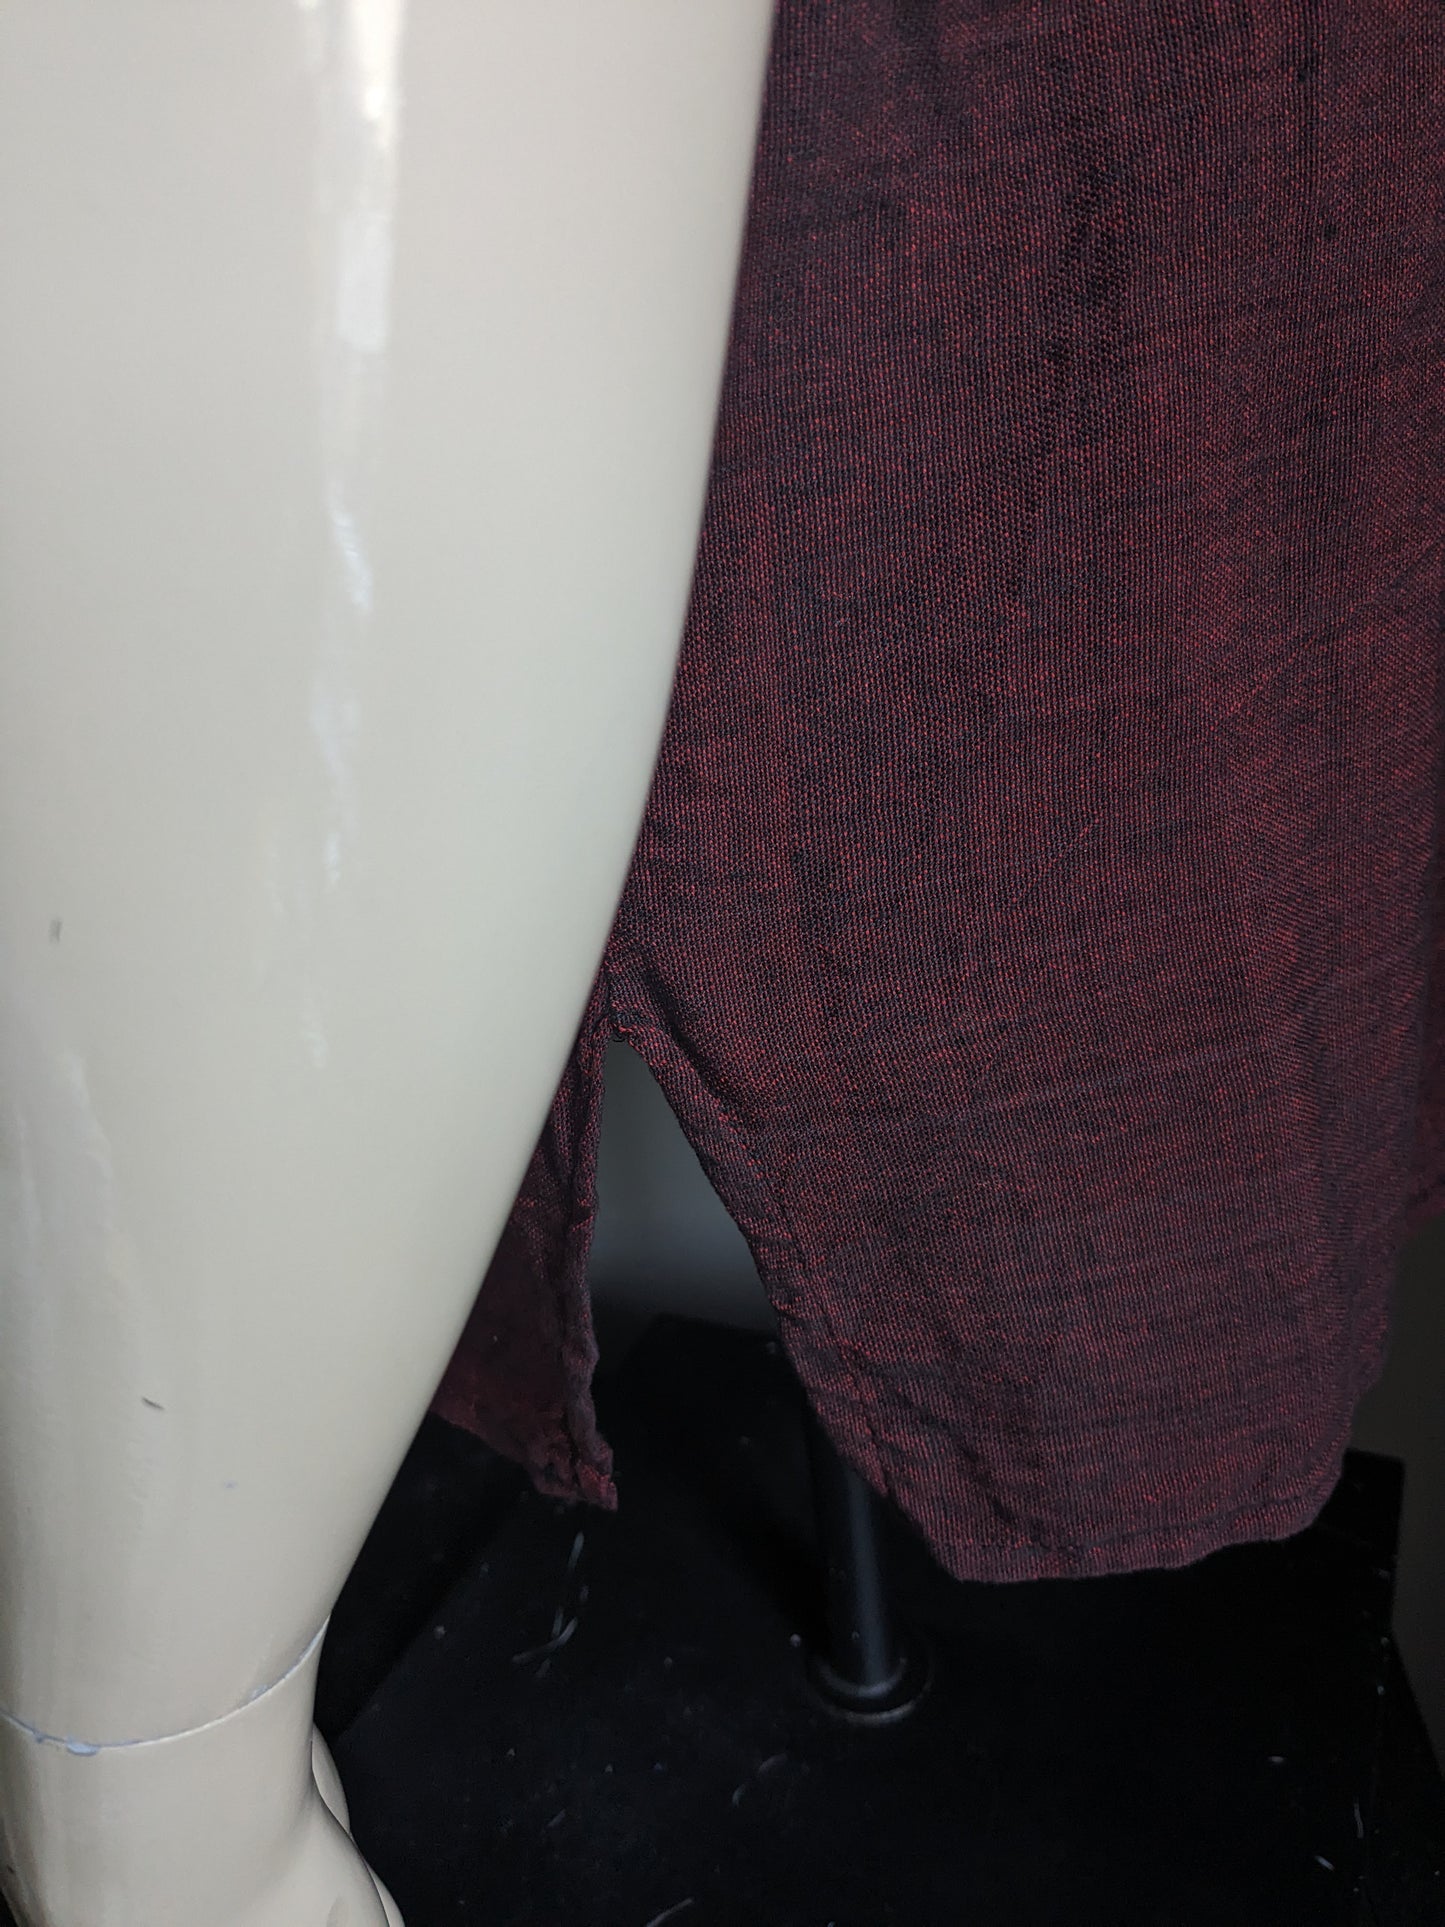 Camisa vintage con cuello en V. Rojo negro mezclado, con motivo blanco marrón. Talla L.